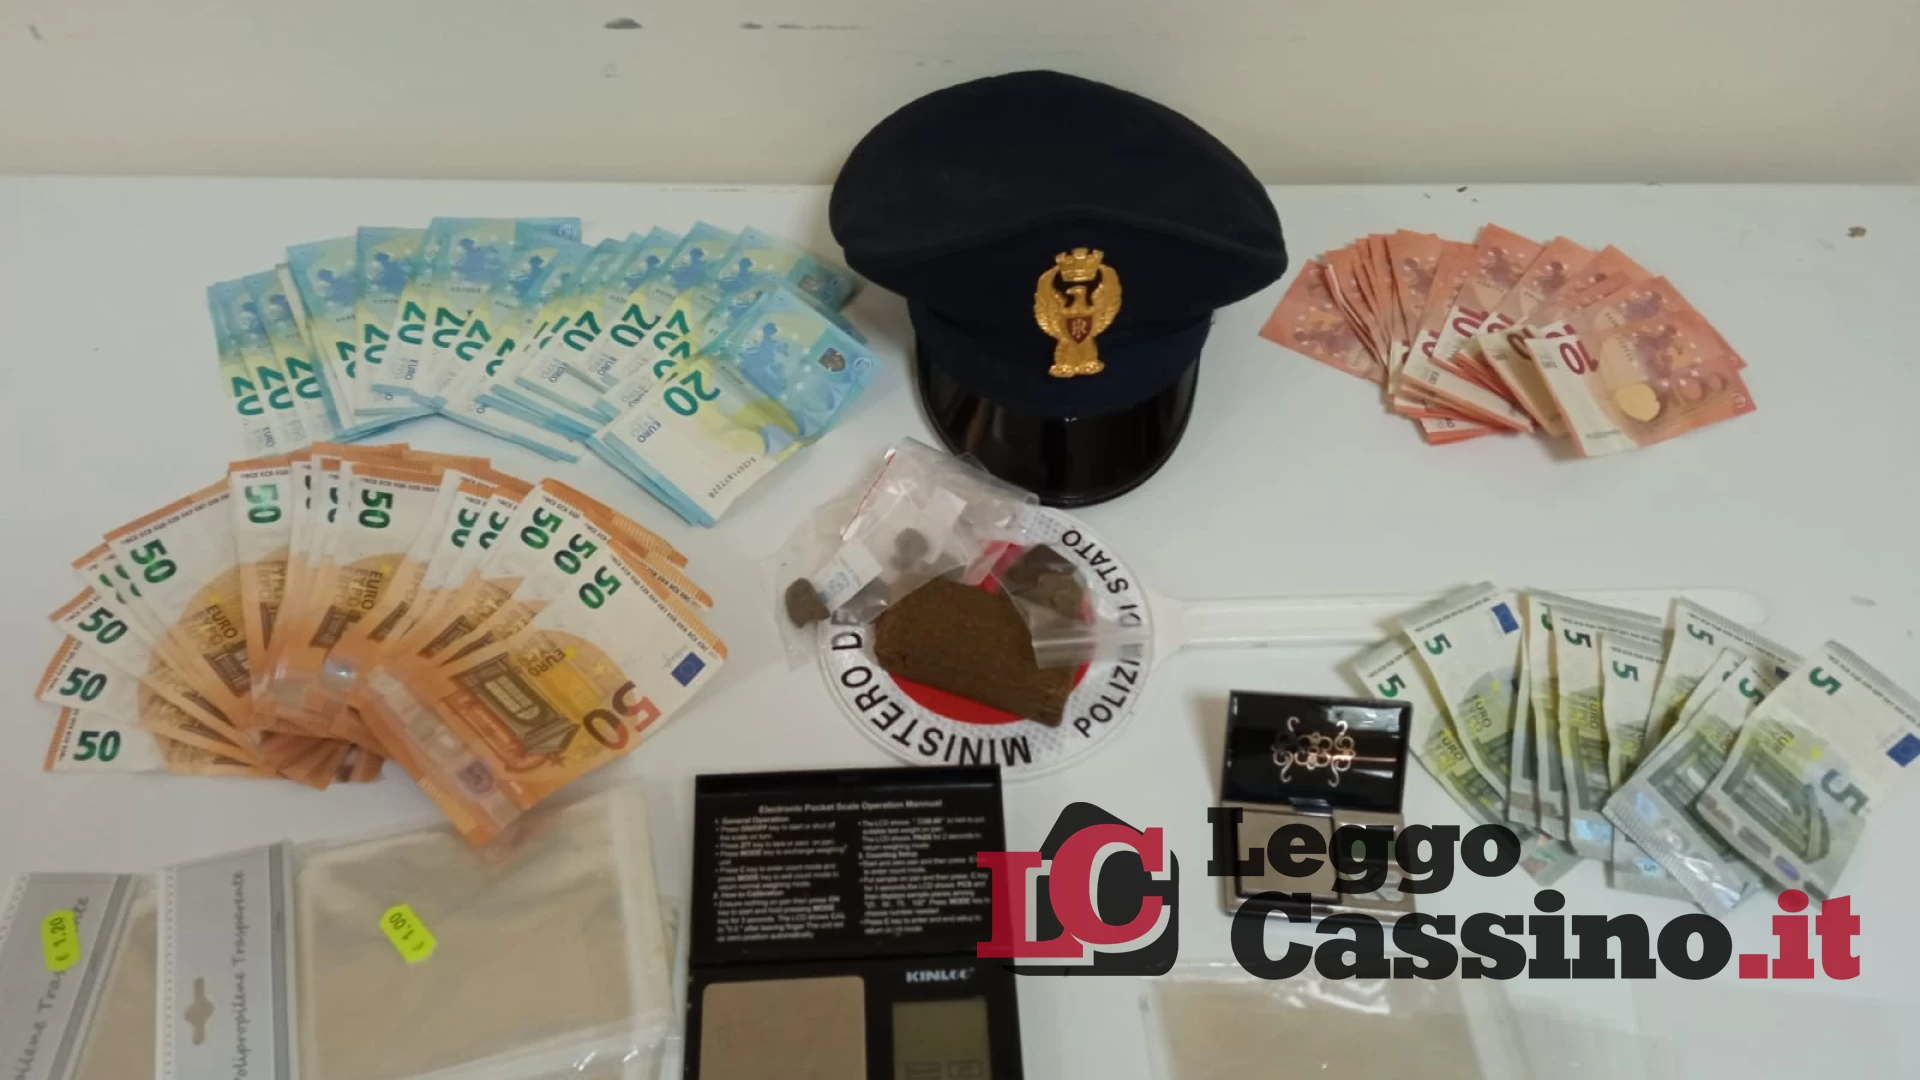 Spacciatore arrestato alla stazione di Cassino